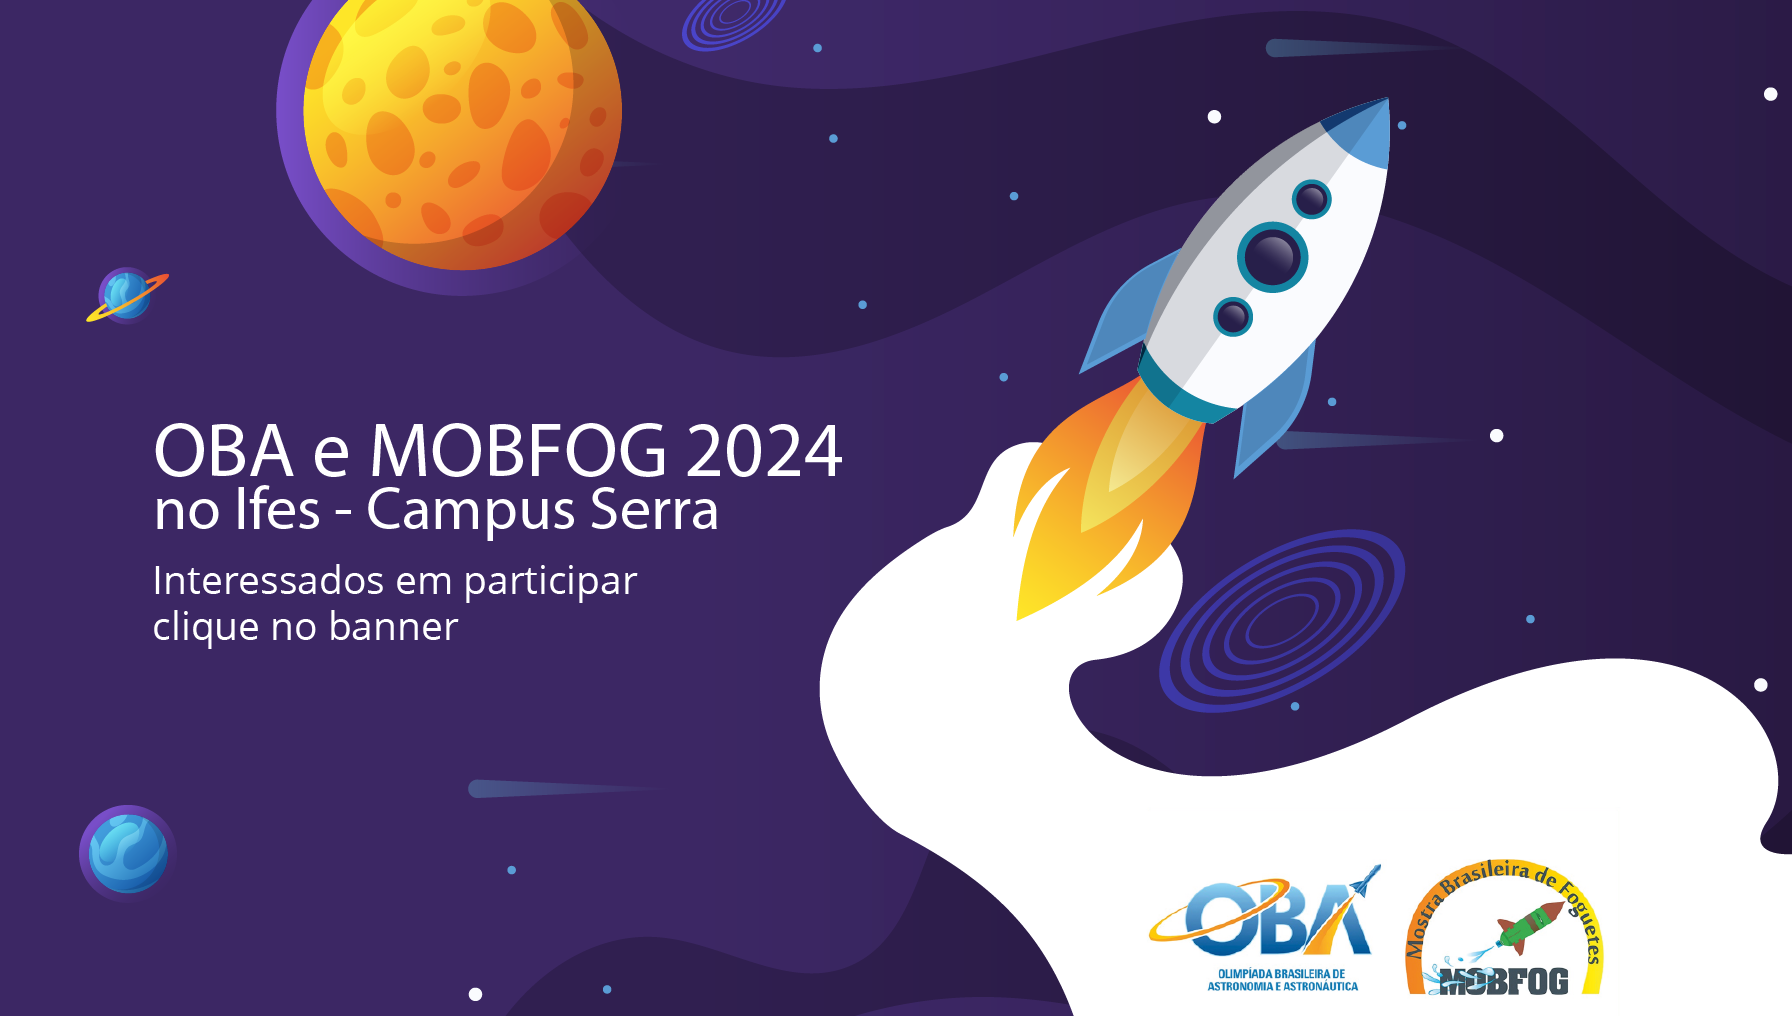 OBA e MOBFOG 2024